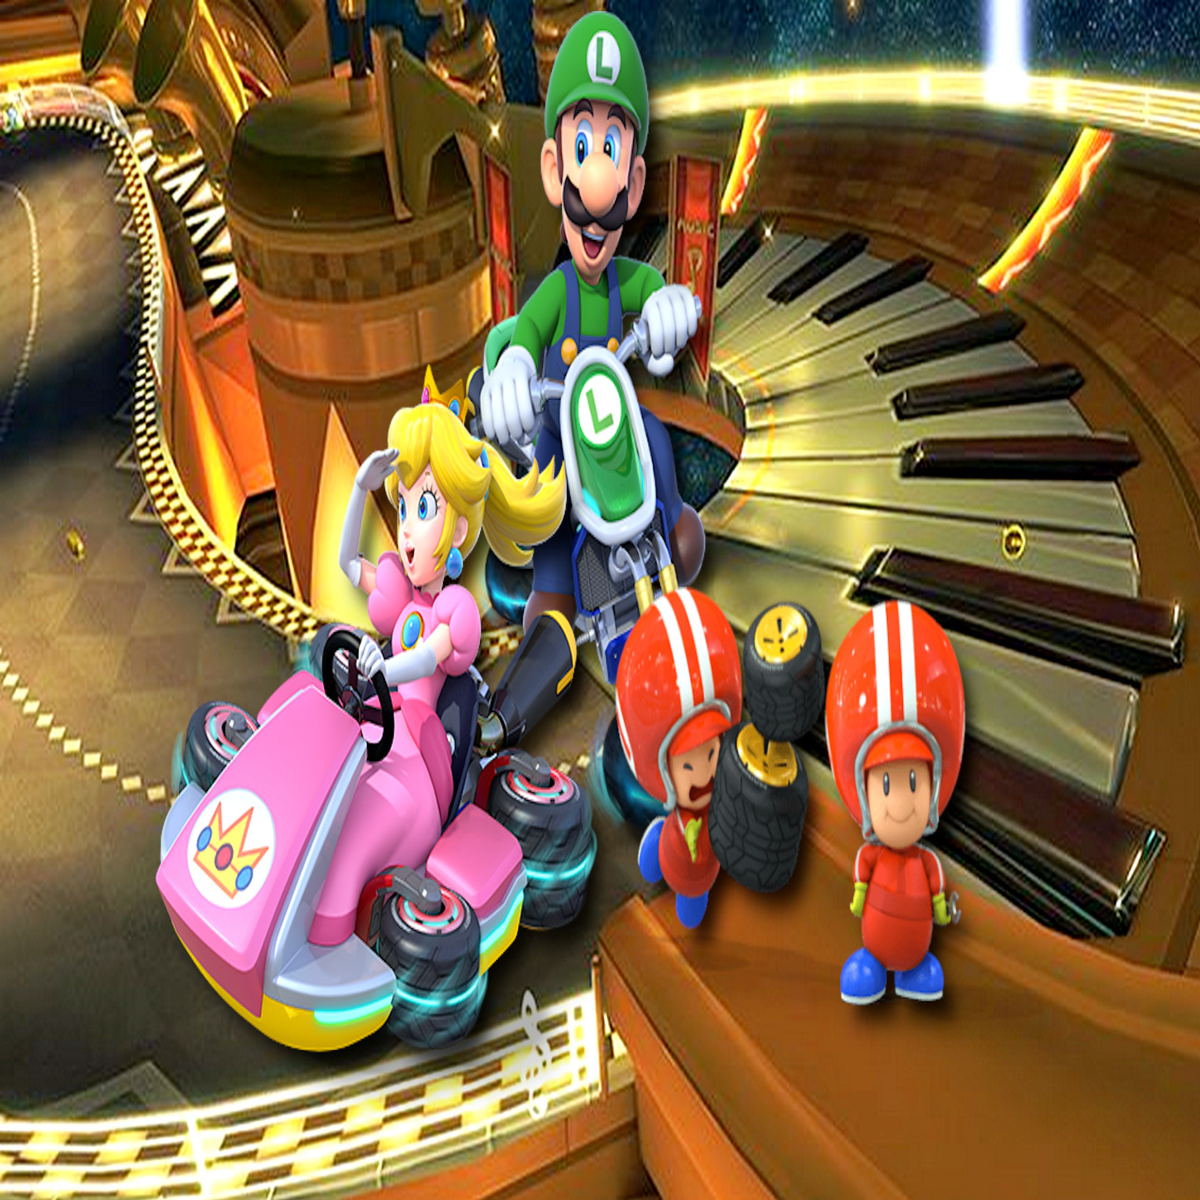 Booster-Streckenpass Alles Mario bestätigte Kurse 8 - Kart Deluxe den und Release, Preis über